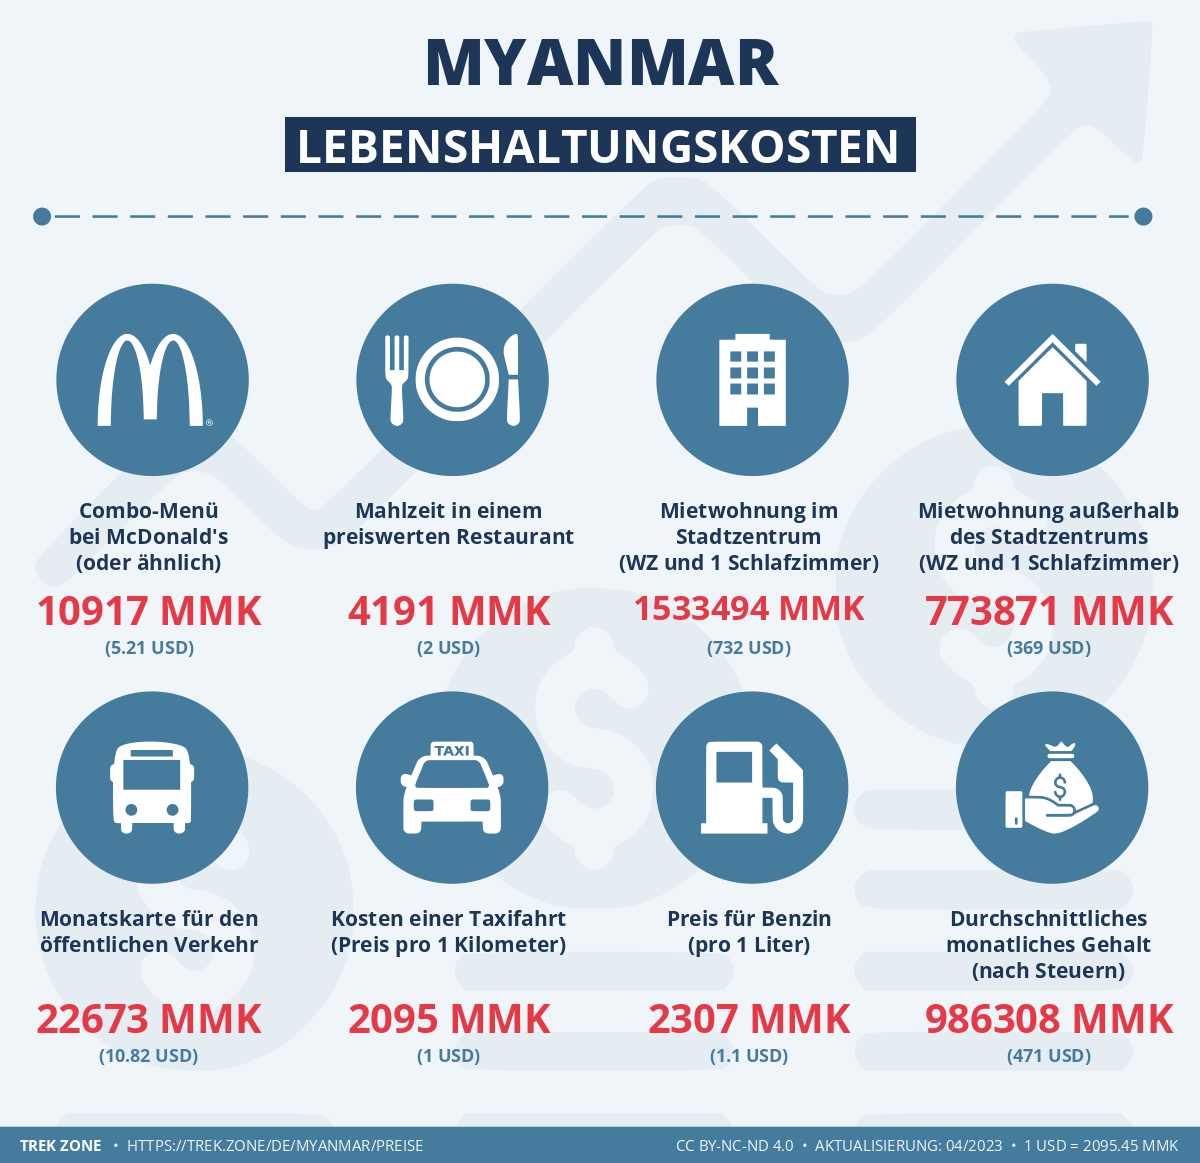 preise und lebenskosten myanmar